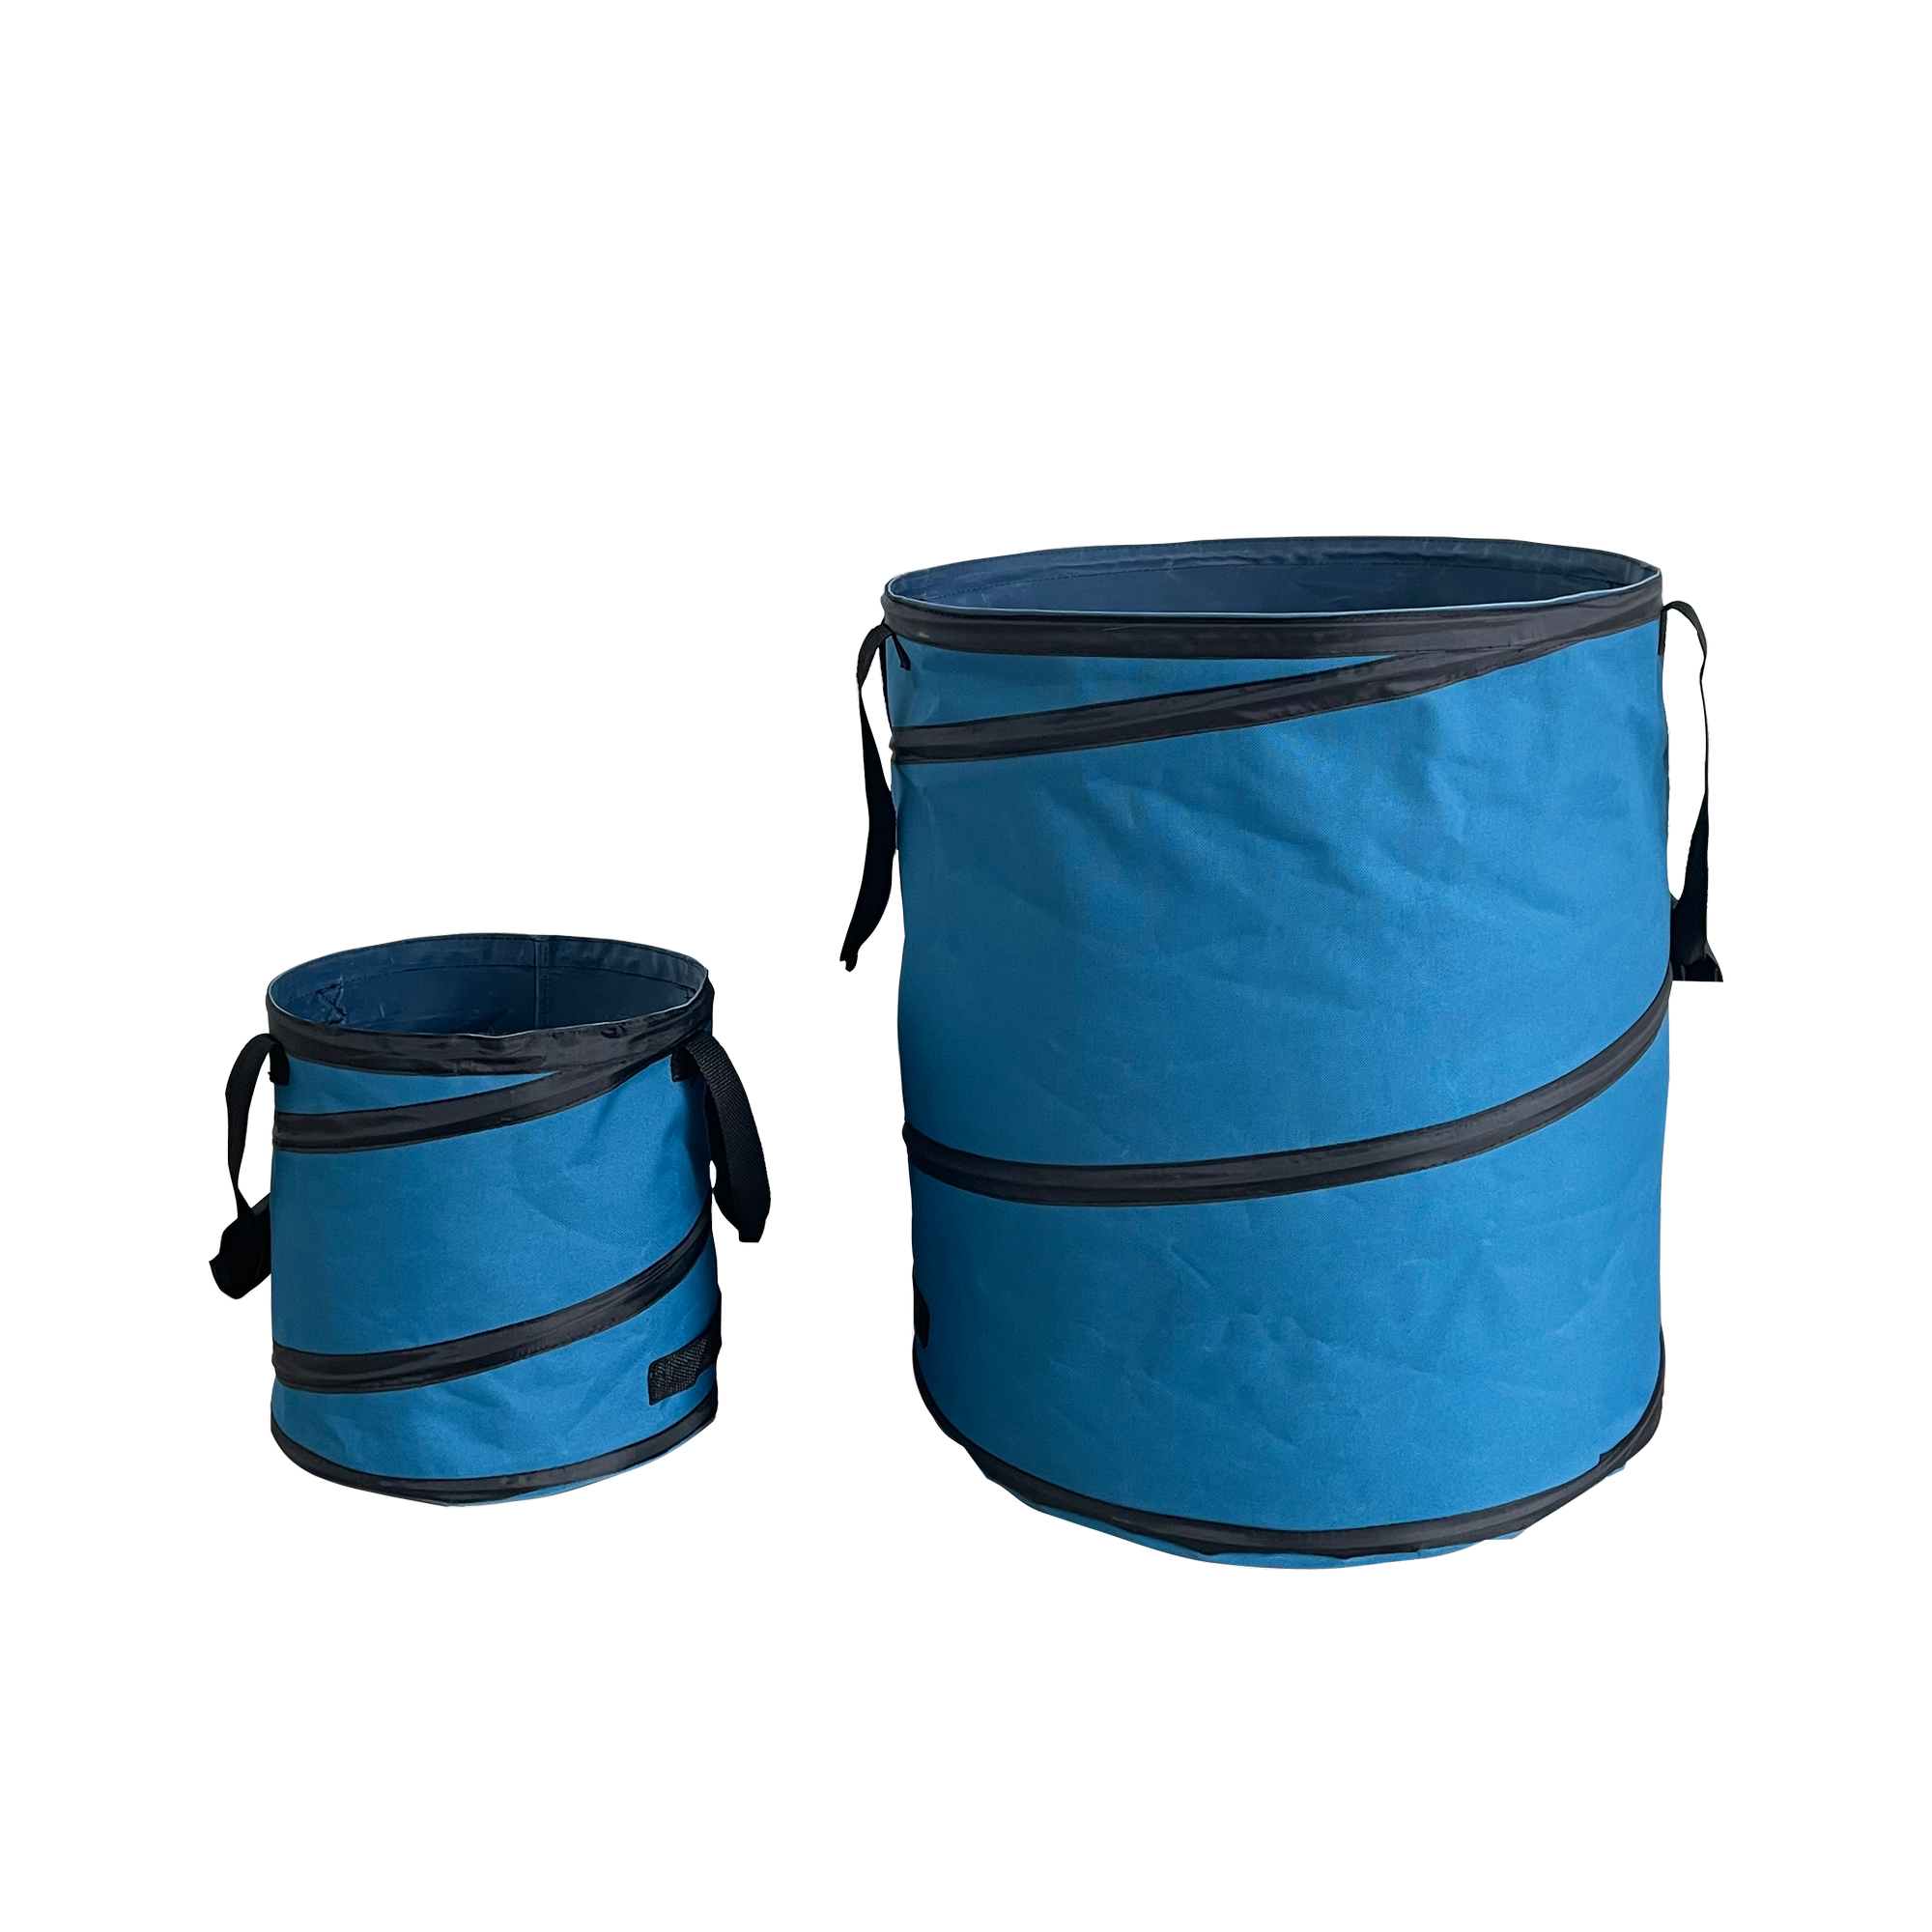 PopUp-Gartenabfallsack-Set blau 15 l und 75 l, 2-teilig + product picture